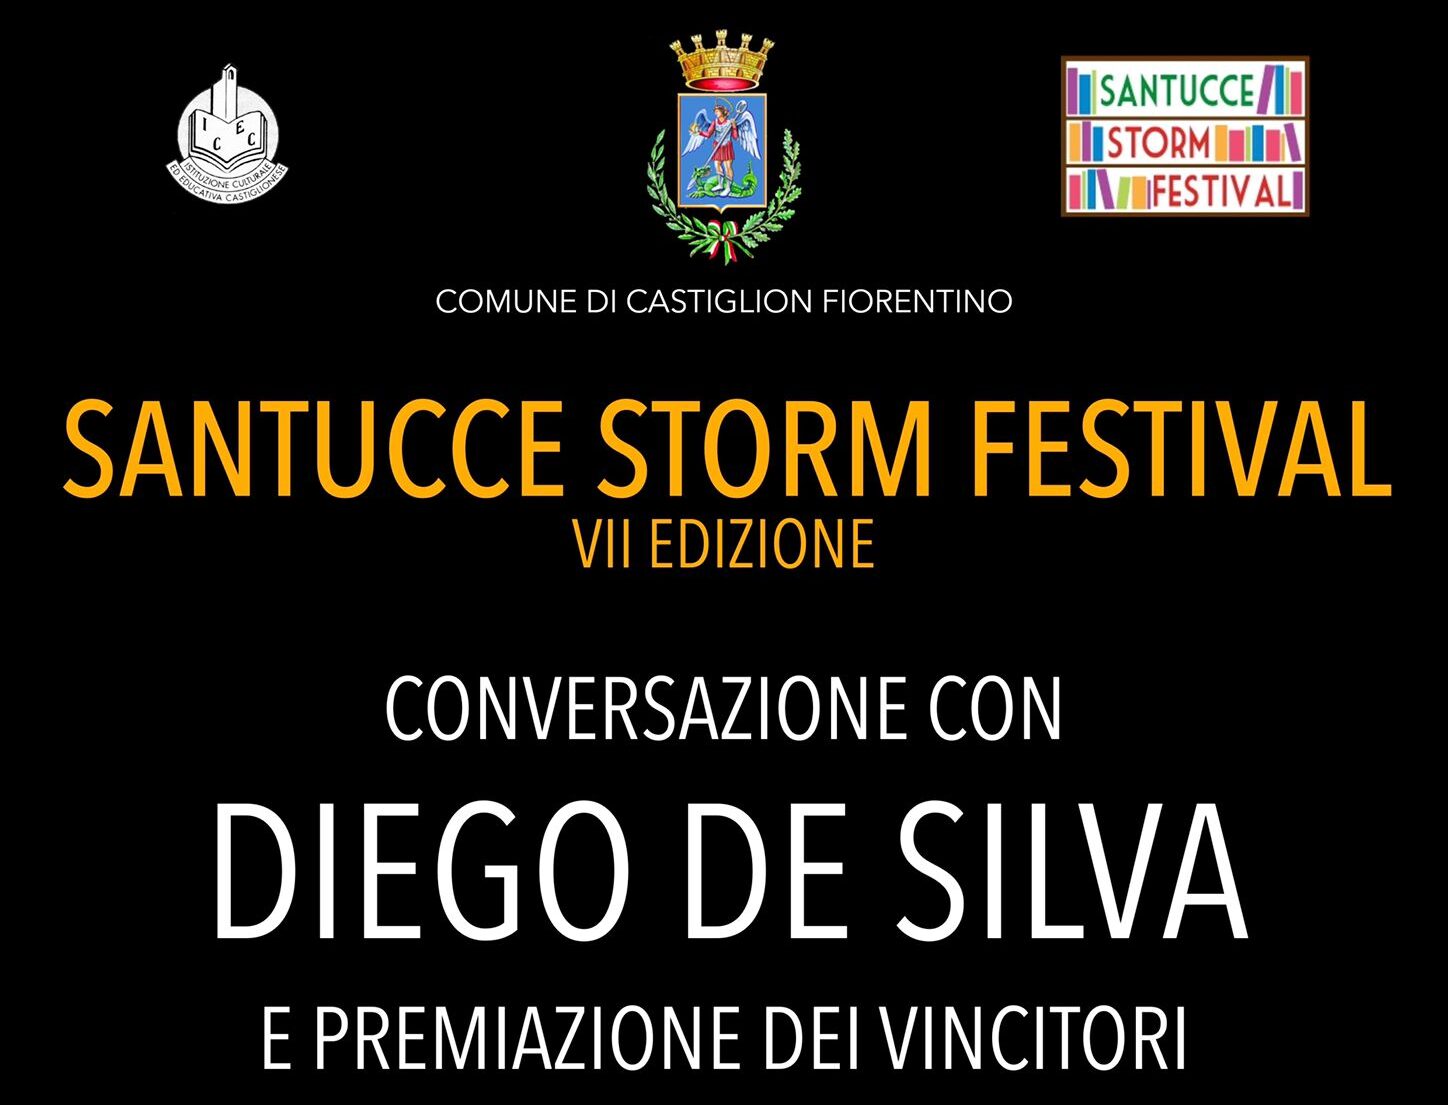 Finale del Santucce Storm Festival, sabato 11 dicembre alle ore 17 presso chiesa di Sant’Angelo al Cassero